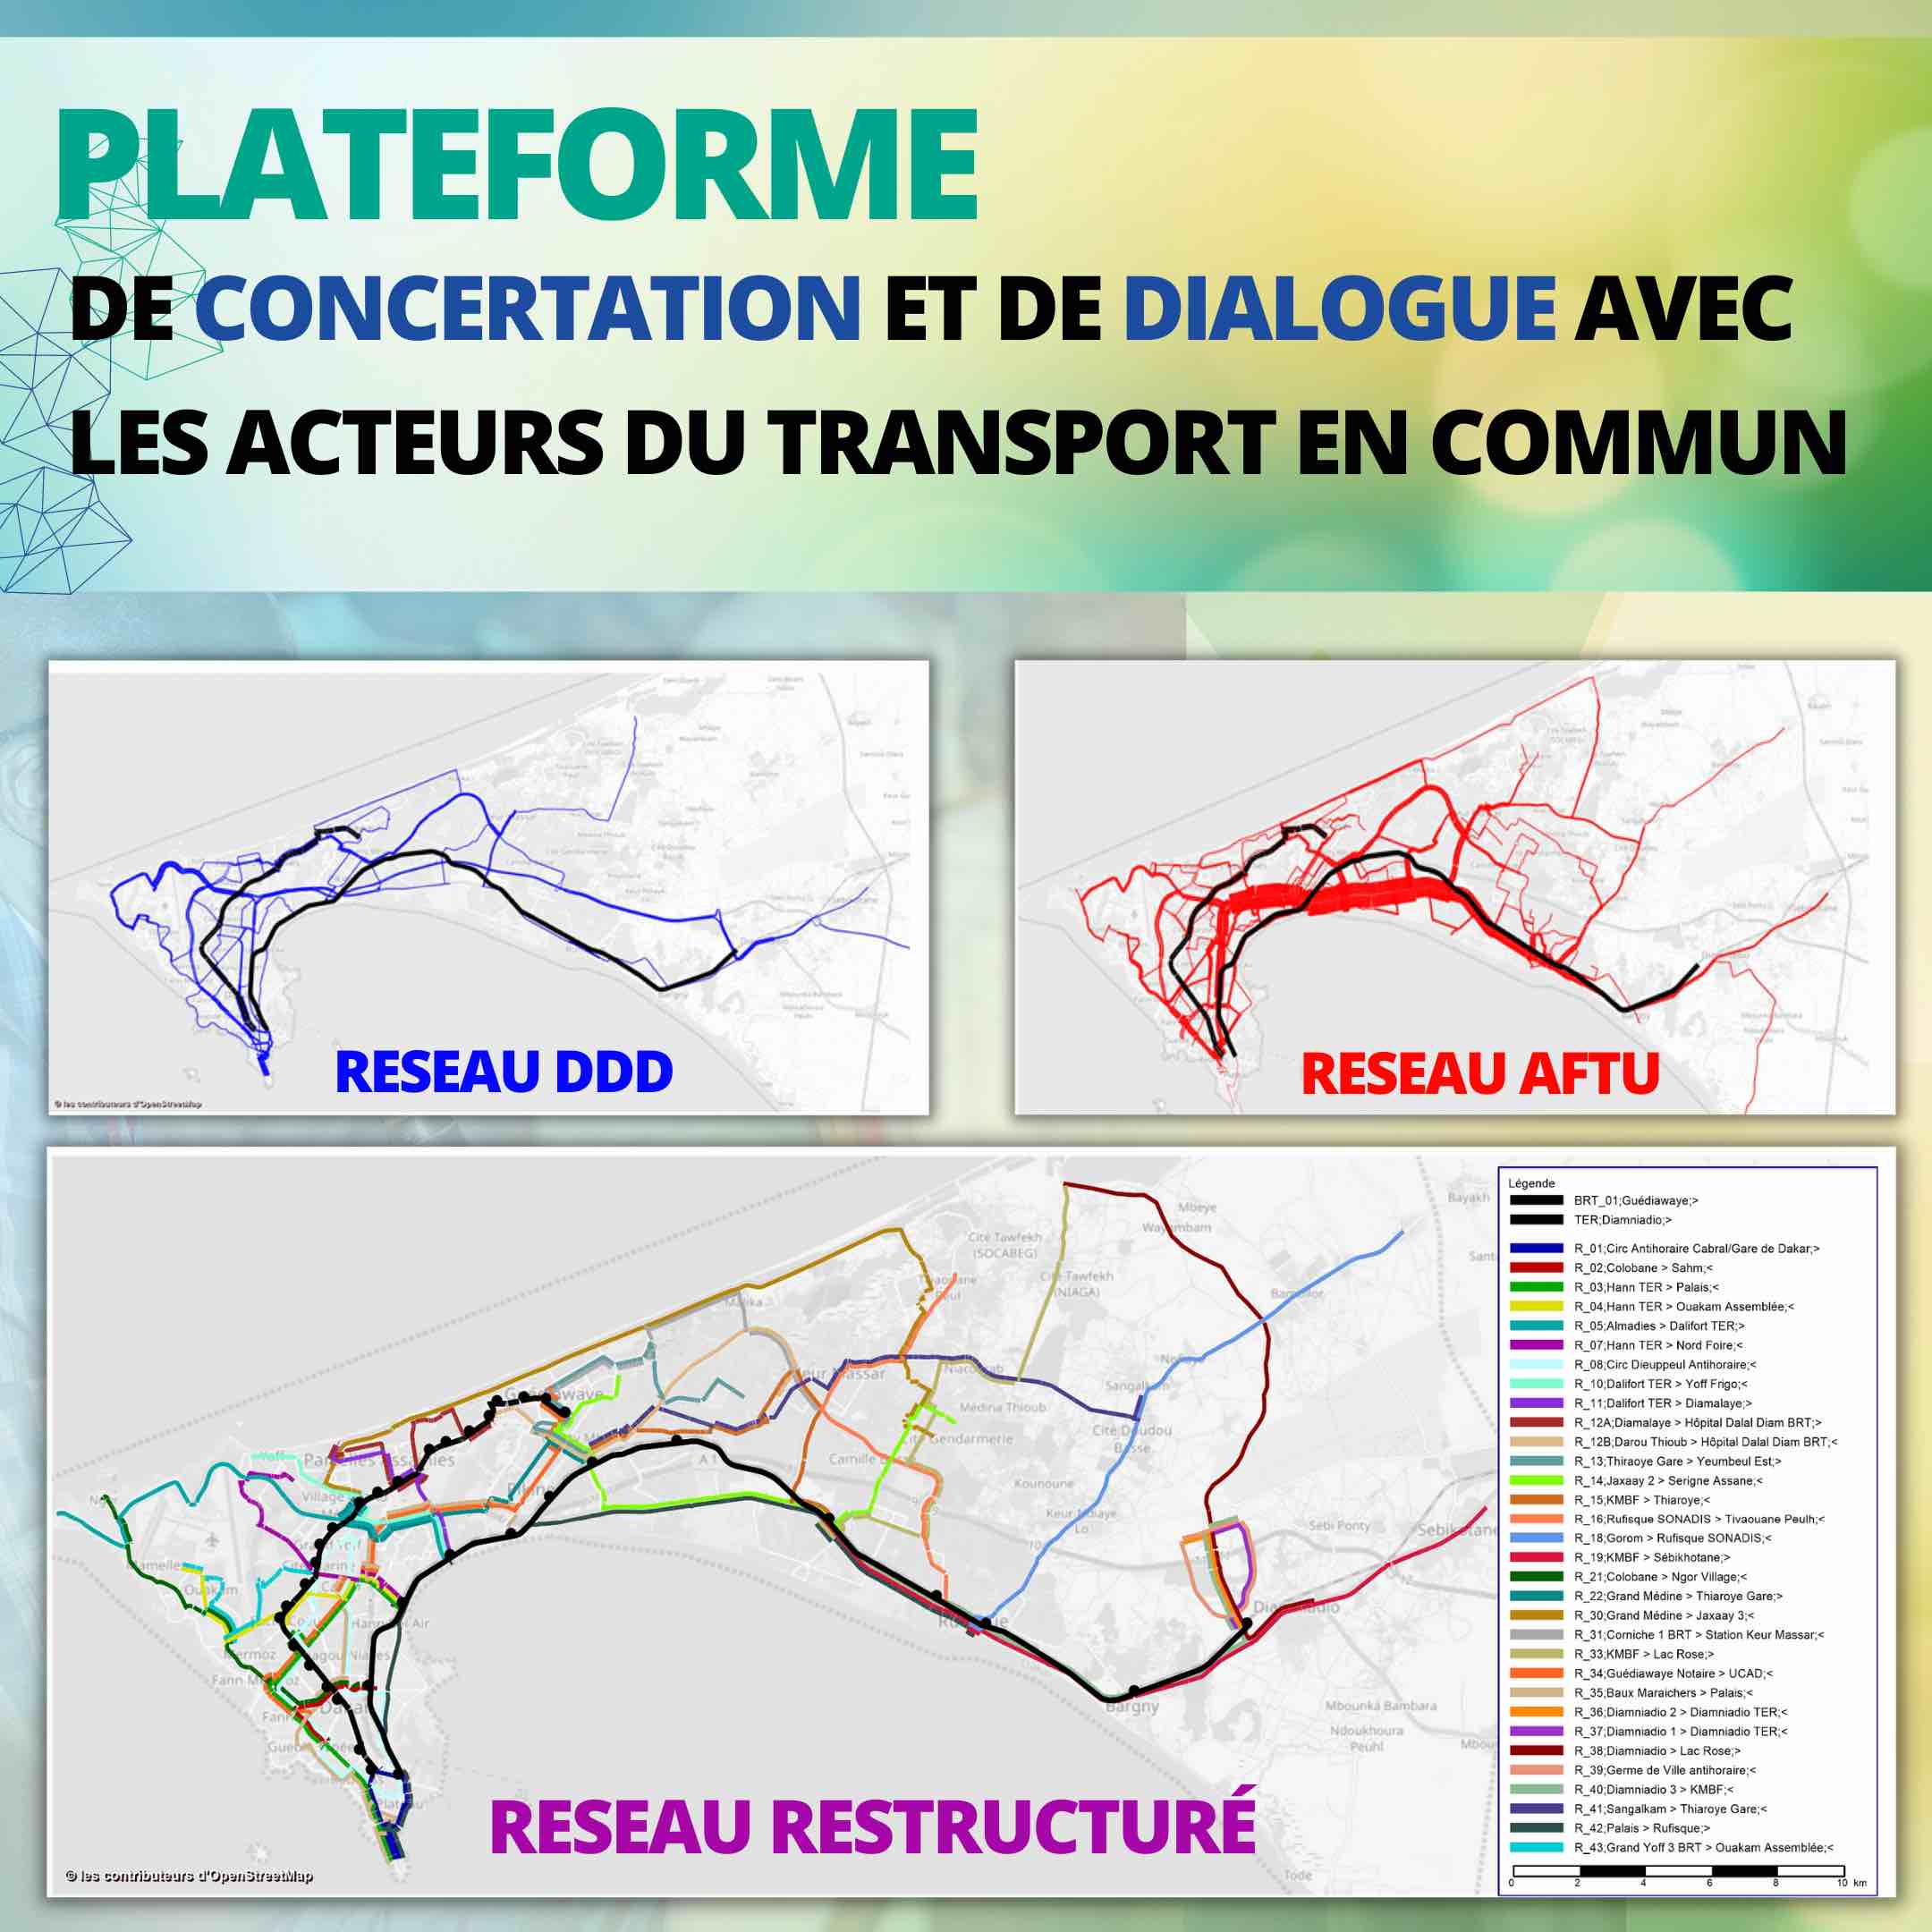 Lancement de la Plateforme de concertation avec les opérateurs locaux de transport public dans le cadre du projet de restructuration globale du réseau de transport en commun